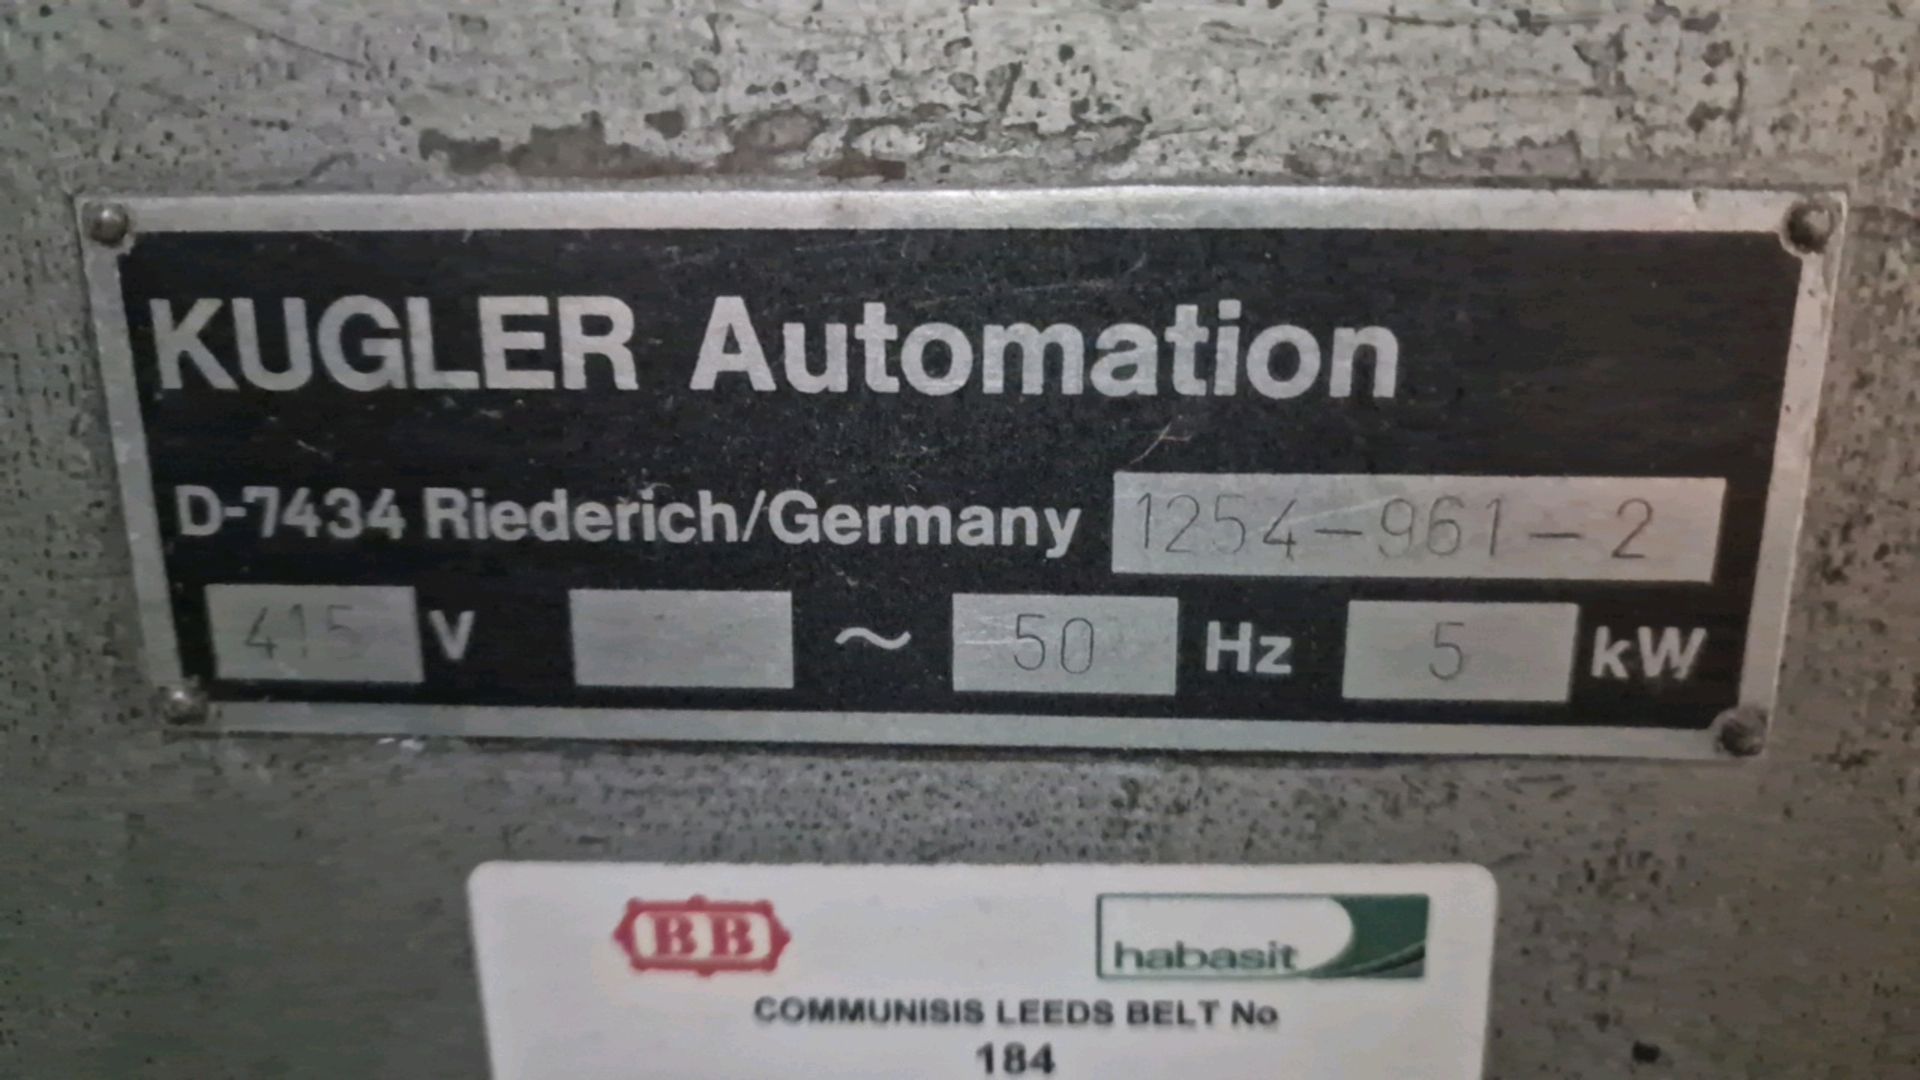 Kuglar Automation - Image 9 of 9